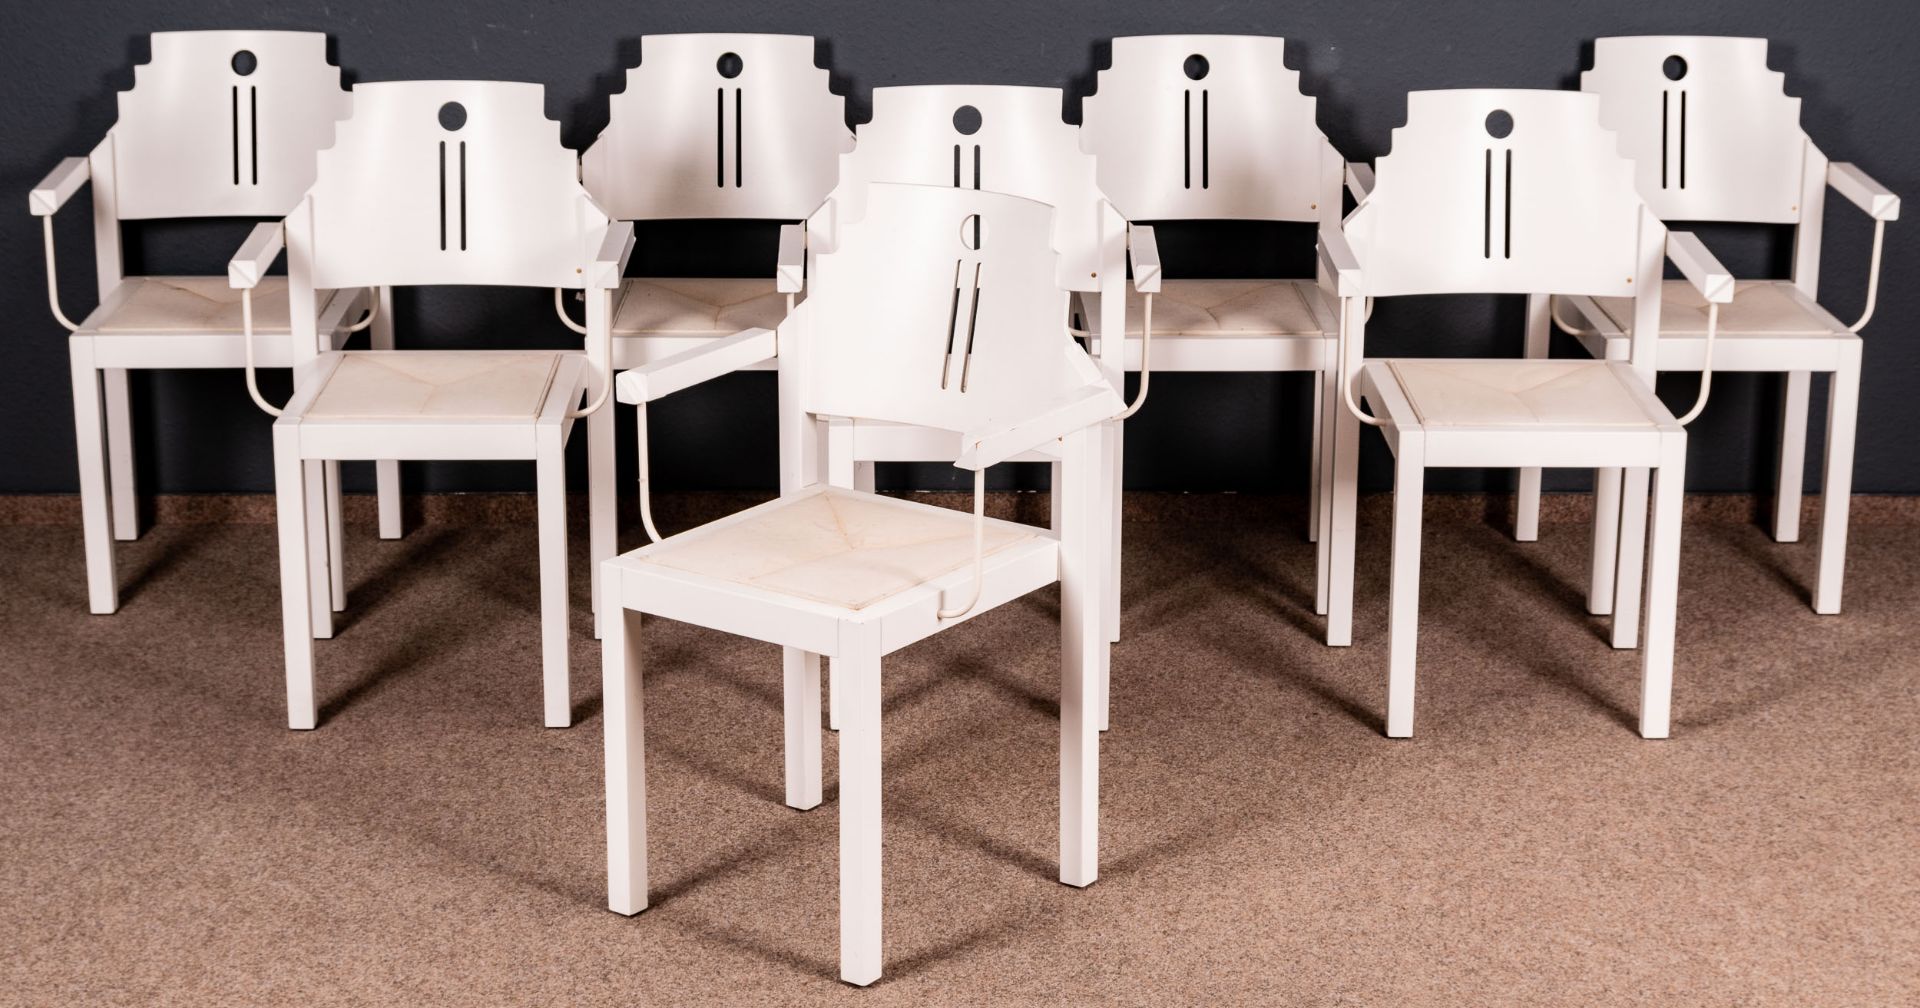 Folge von 8 Armlehnstühlen, weiß lackierte Holzgestelle in nicht alltäglicher Formgebung. Ende 20.